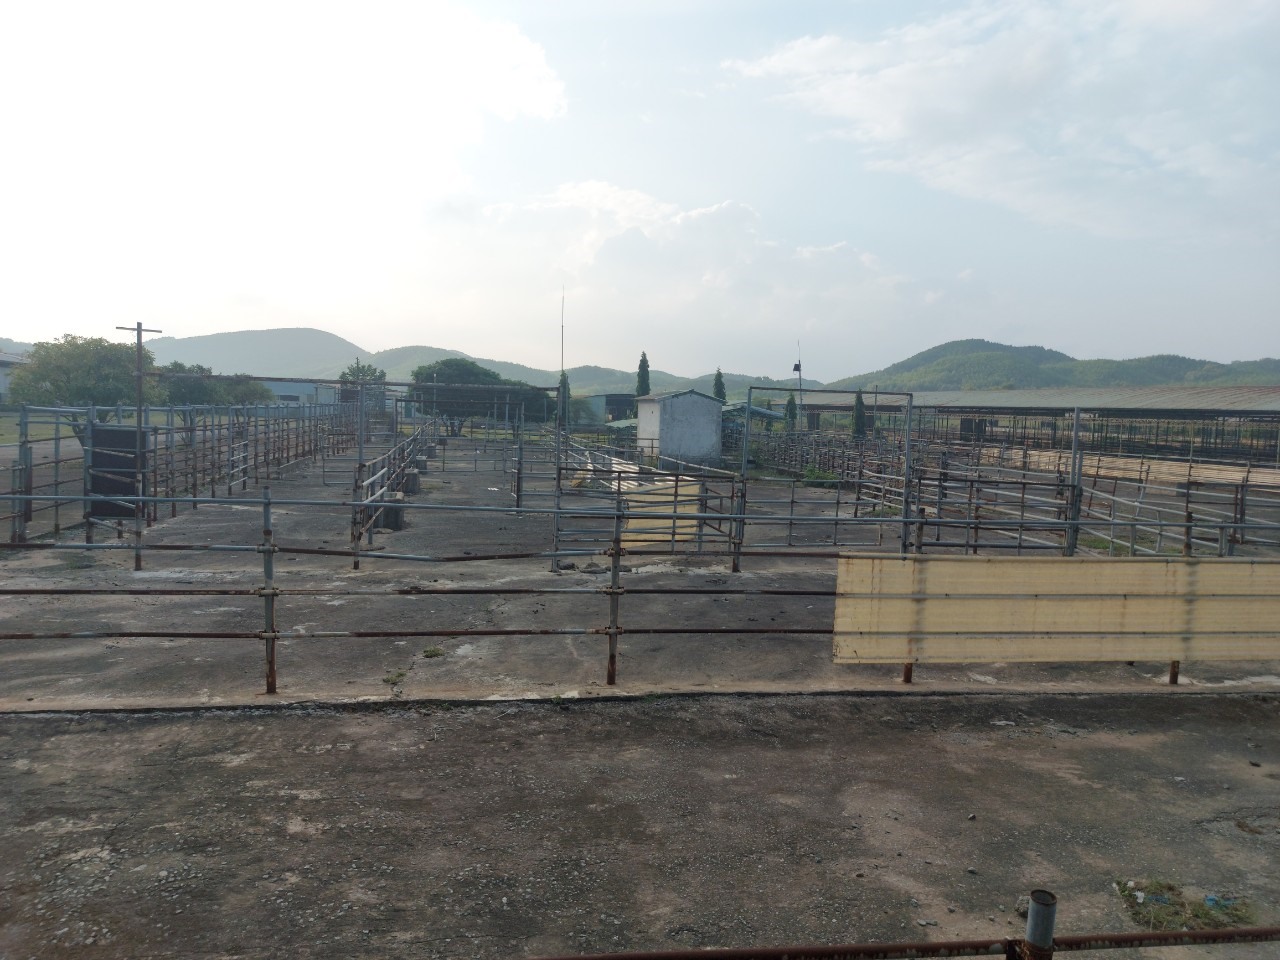 Hệ thống rào chắn mỗi khi nhập bò về sẽ cho vào đây để kiểm tra sức khỏe, trọng lượng trước khi cho vào chuồng nuôi và đưa ra tập kết mỗi lần xuất bán. Ảnh: TT.